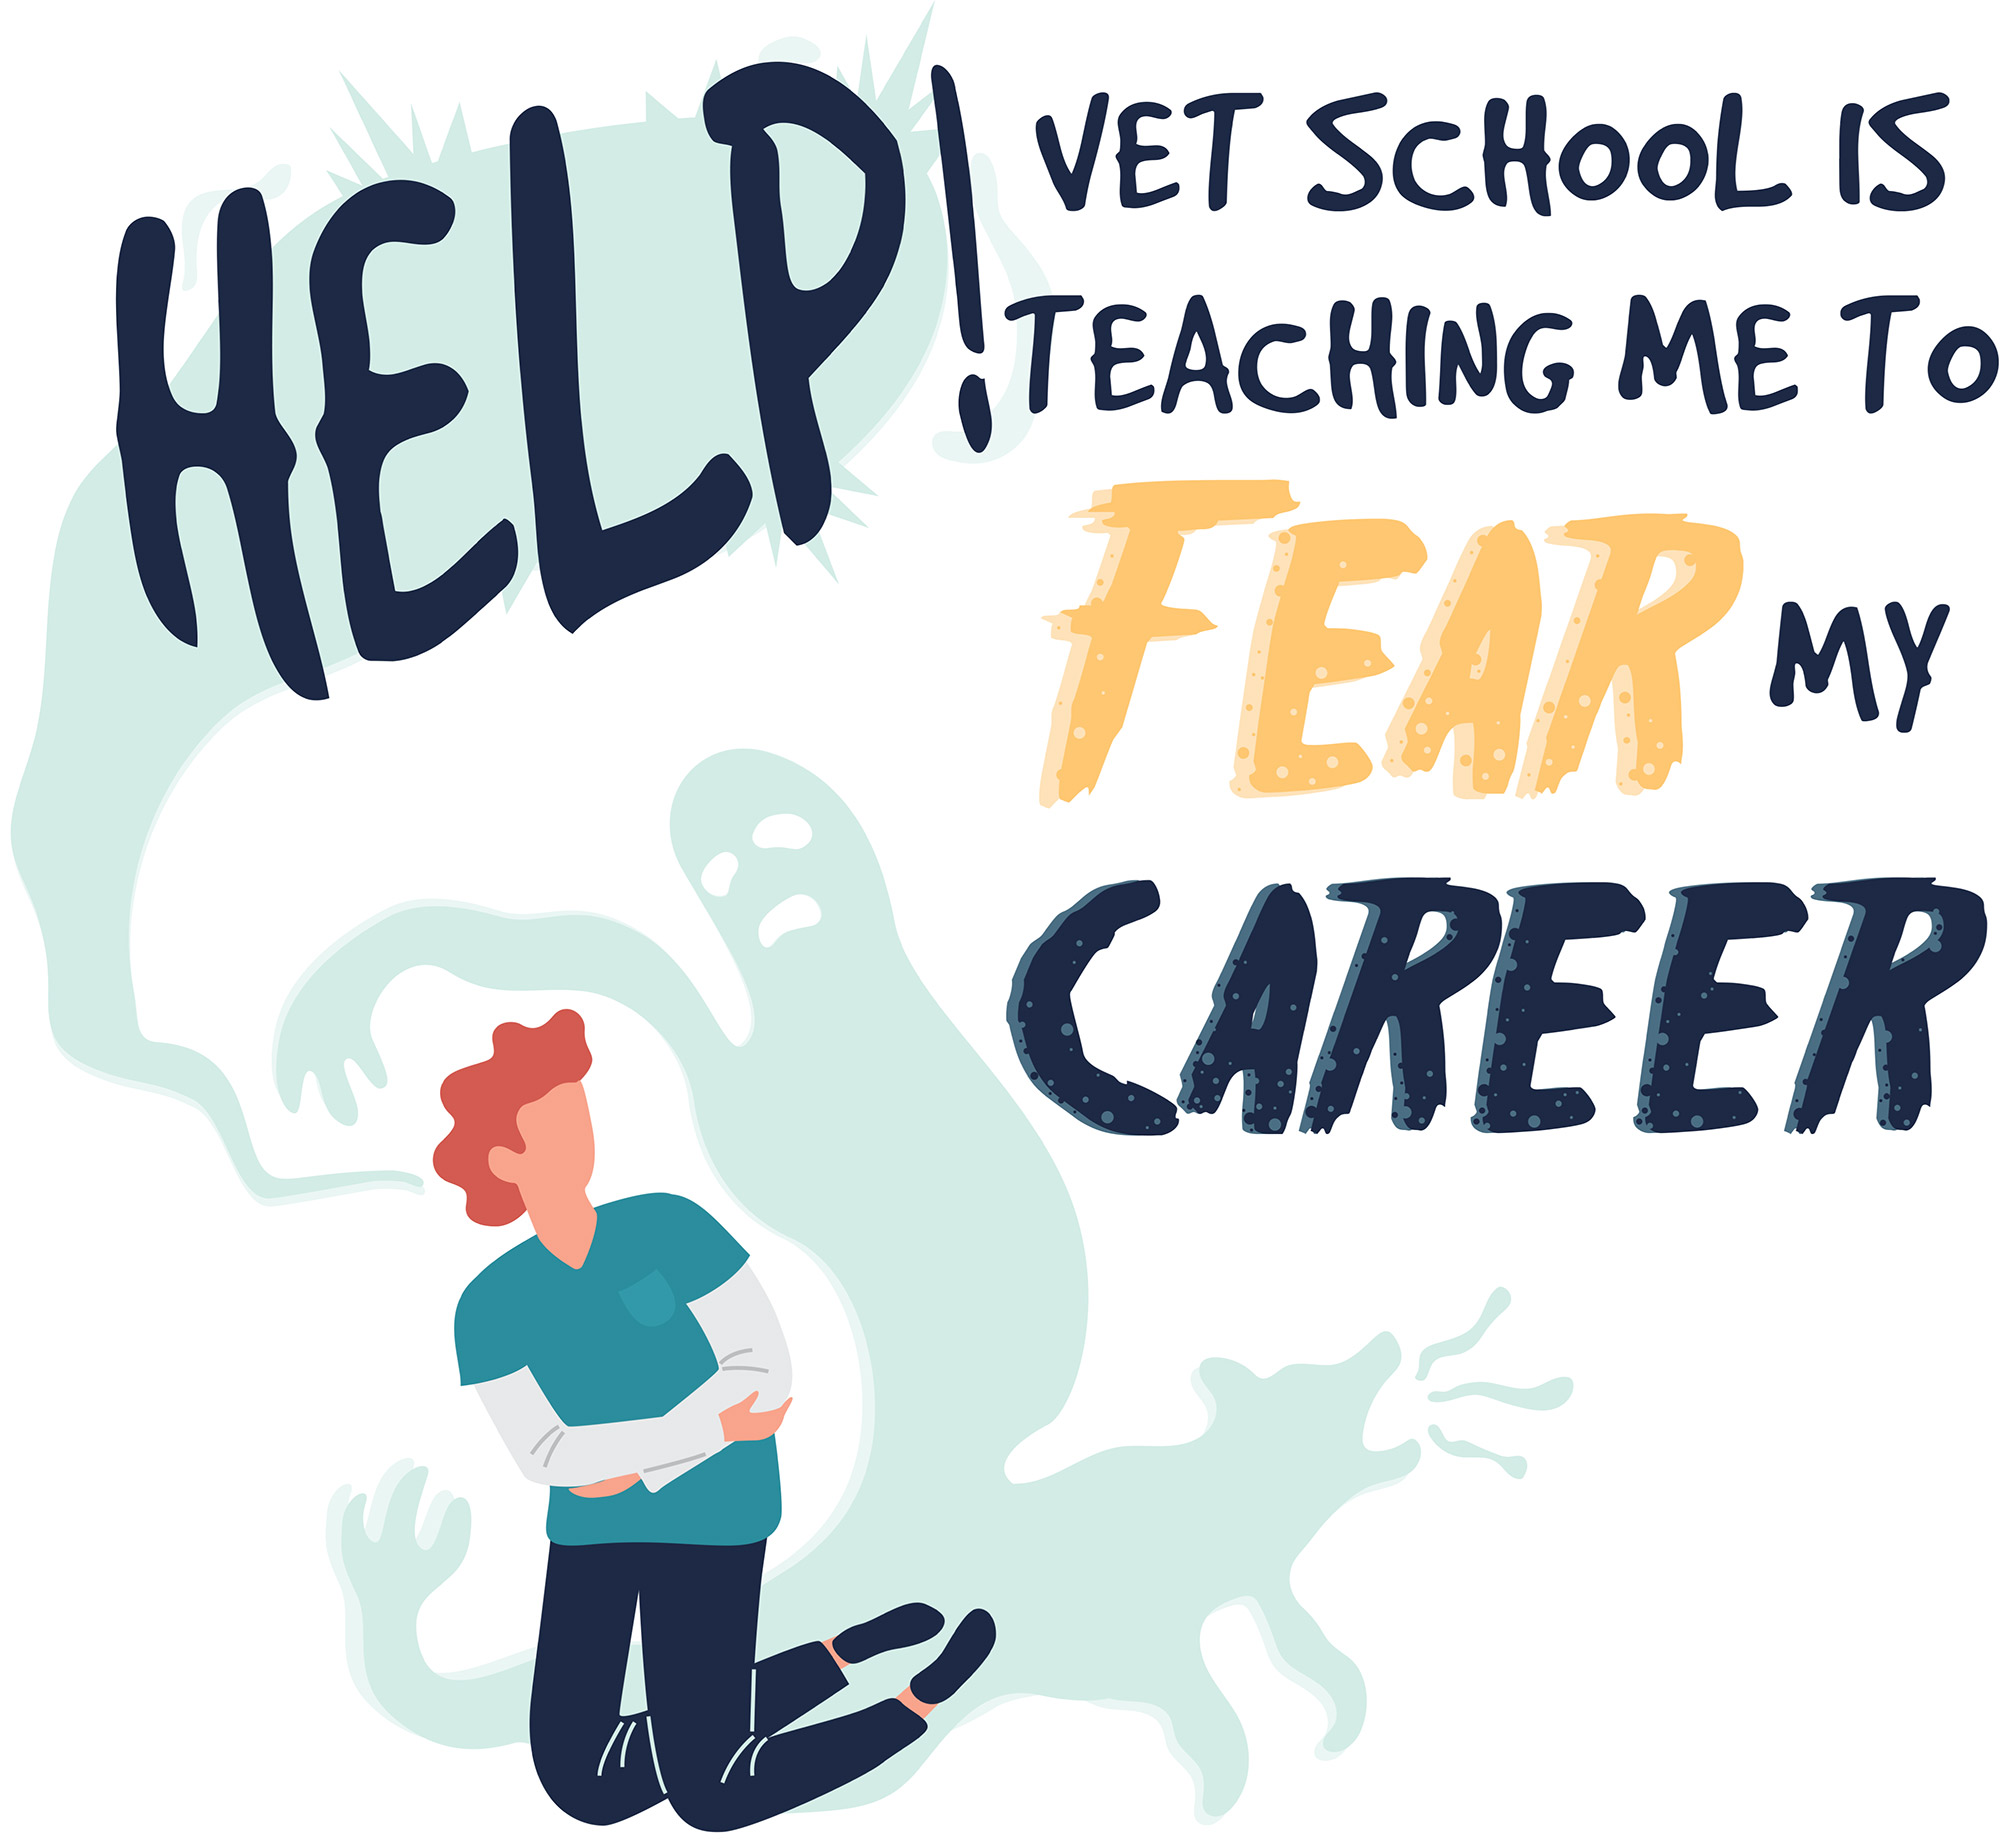 Help! Vet School is Teaching Me to Fear My Career